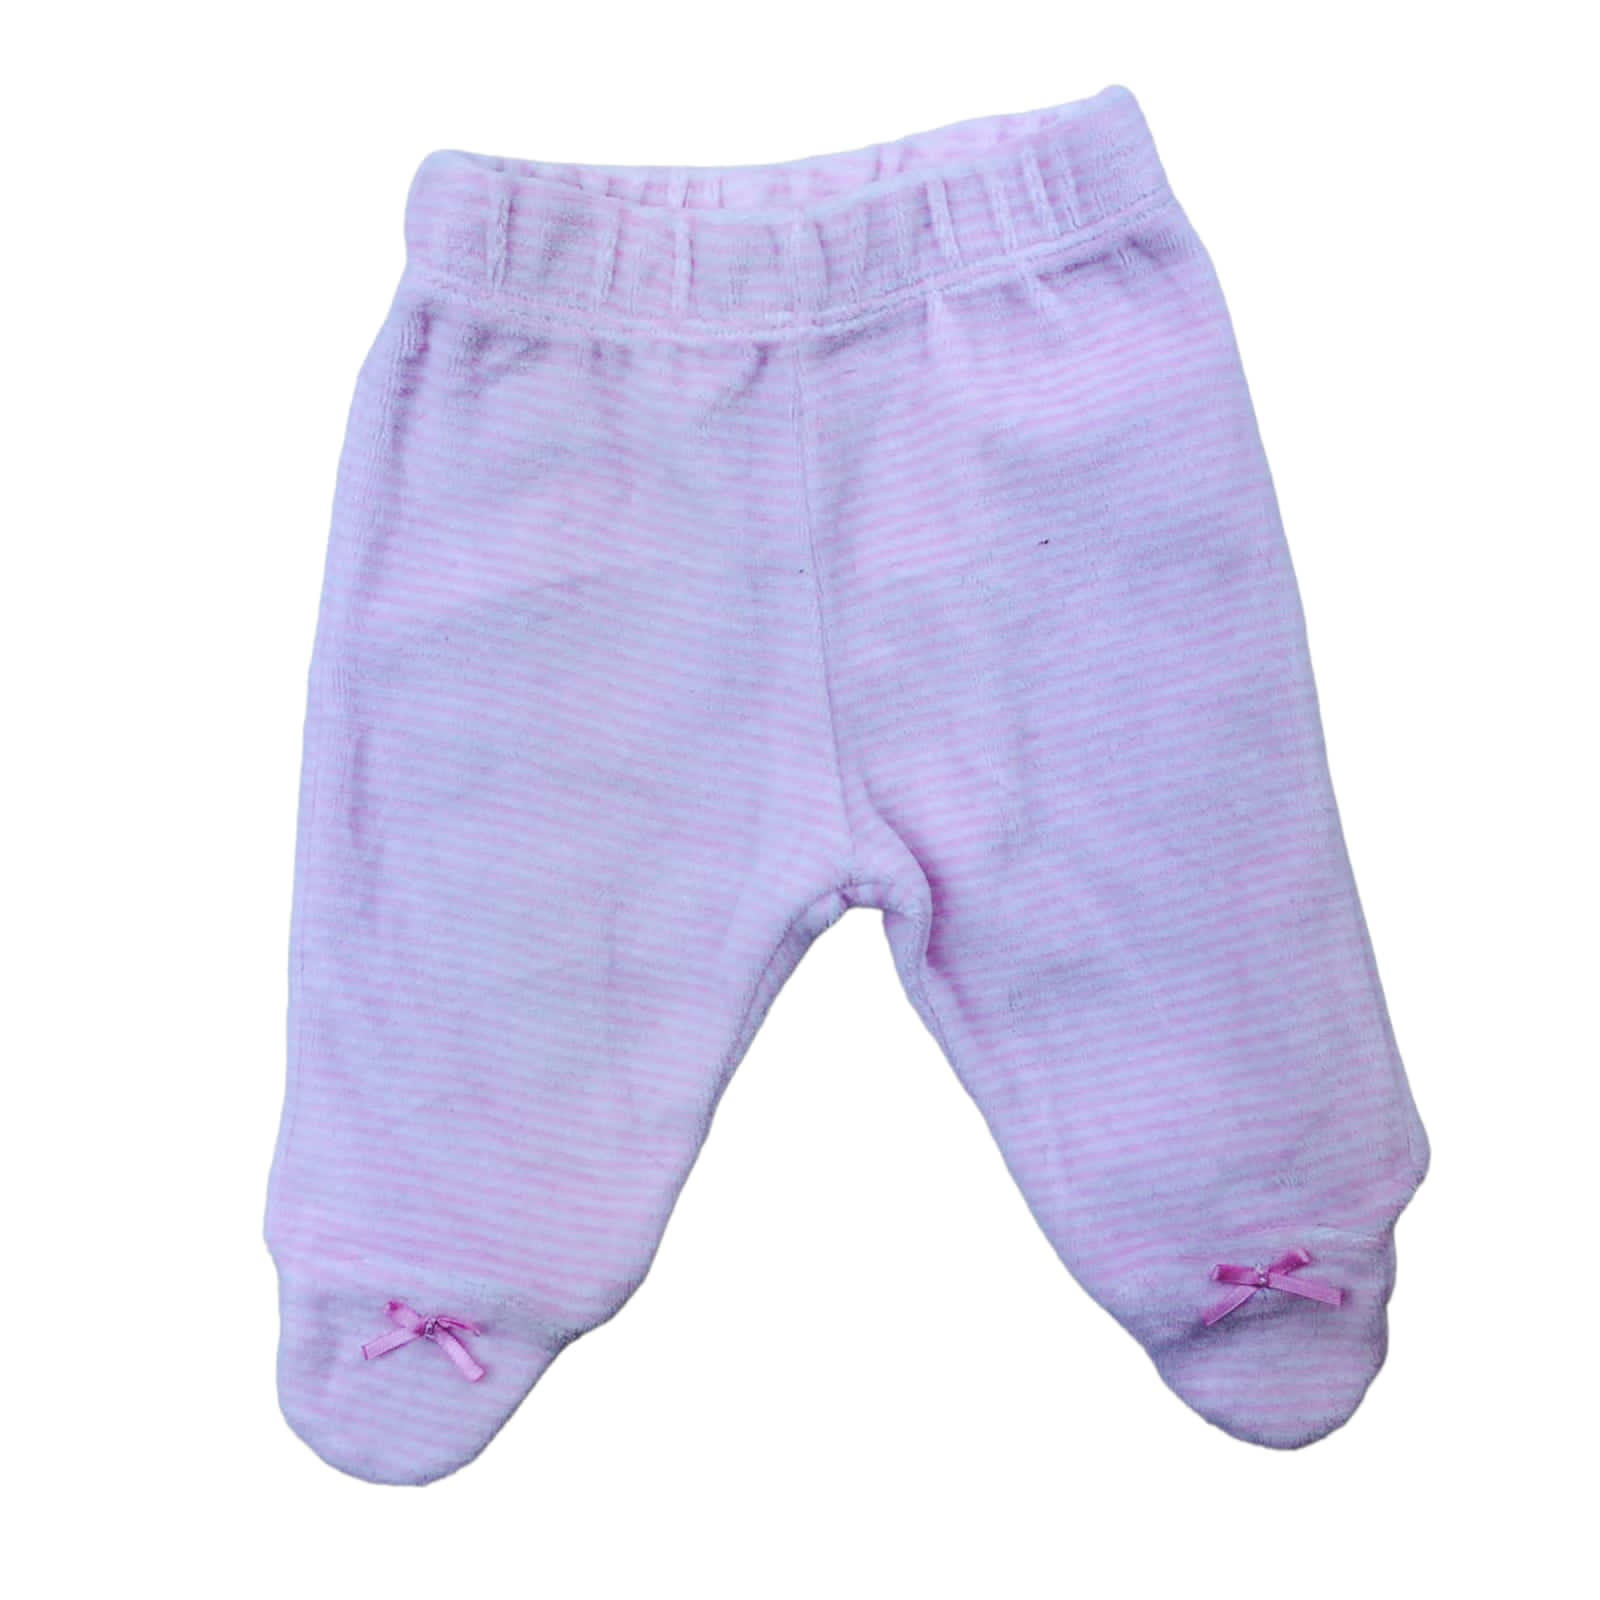 Panty de plush blanca con rayas rosadas y lazo